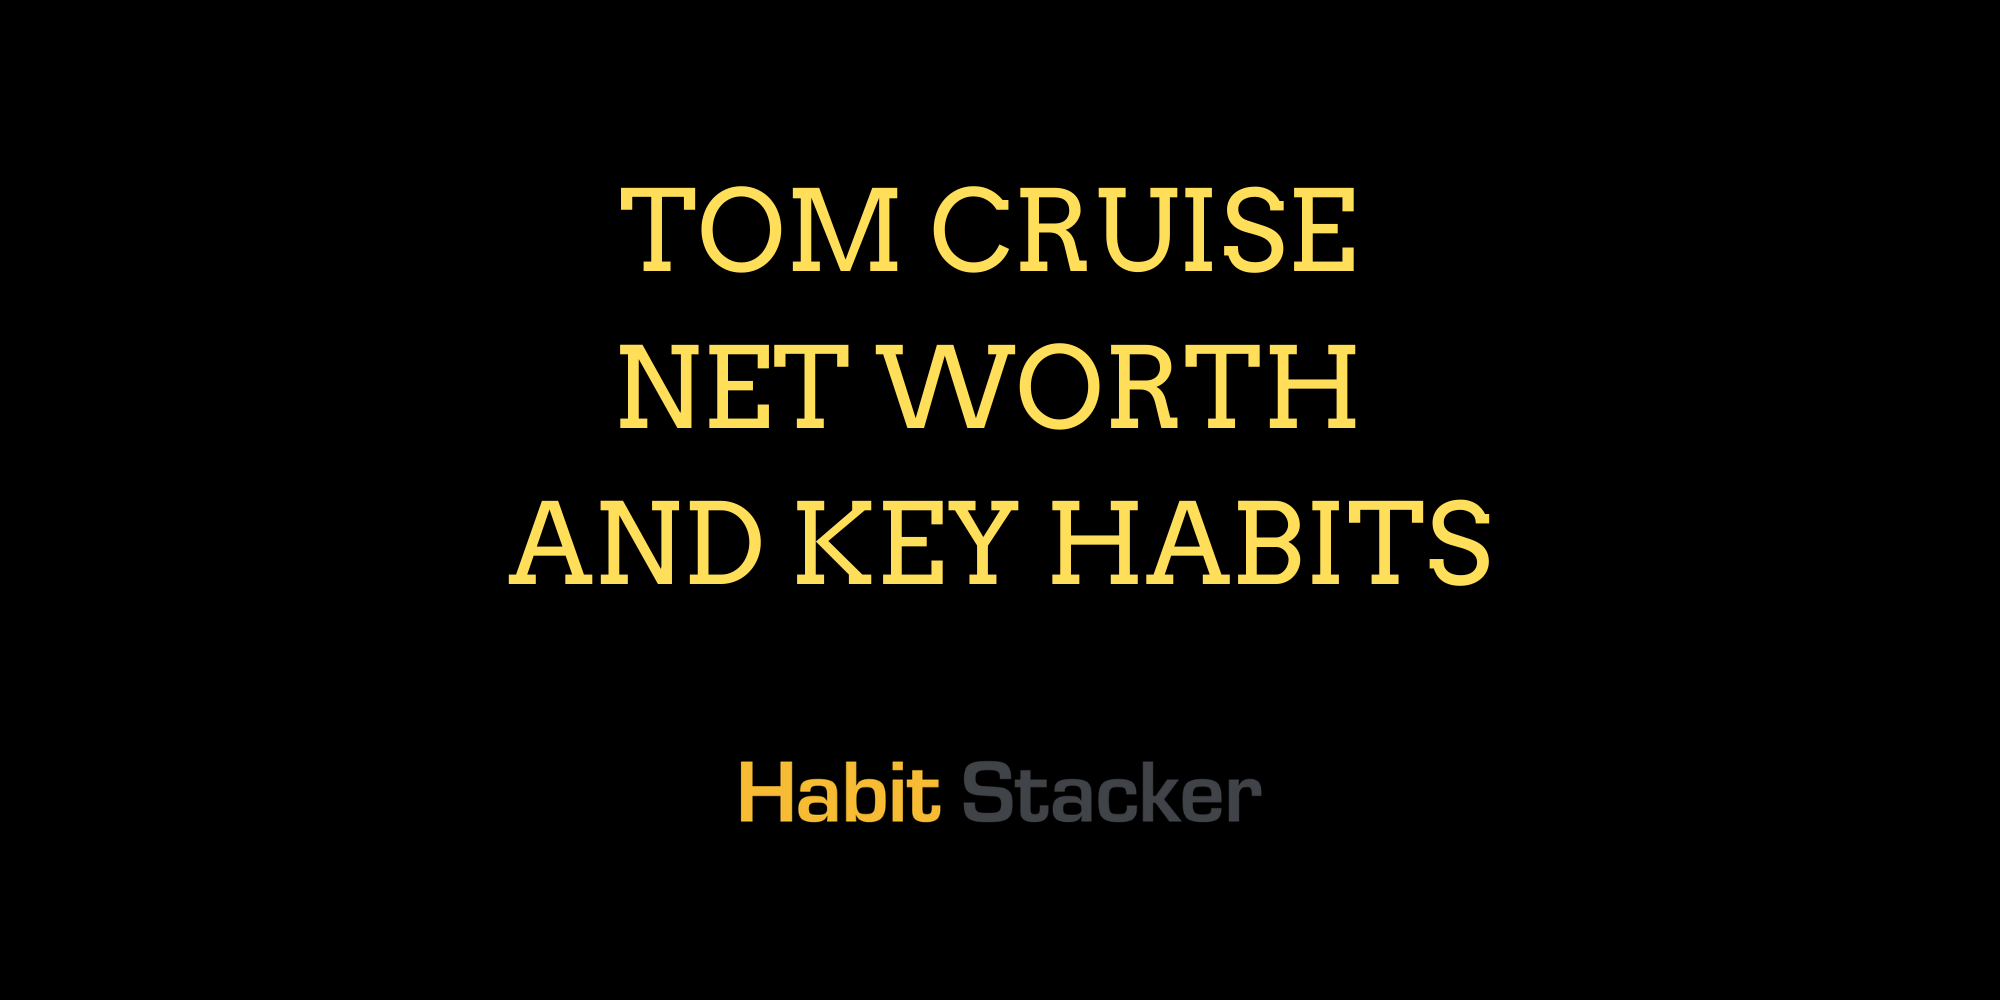 Tom Cruise Net Worth and Key Habits